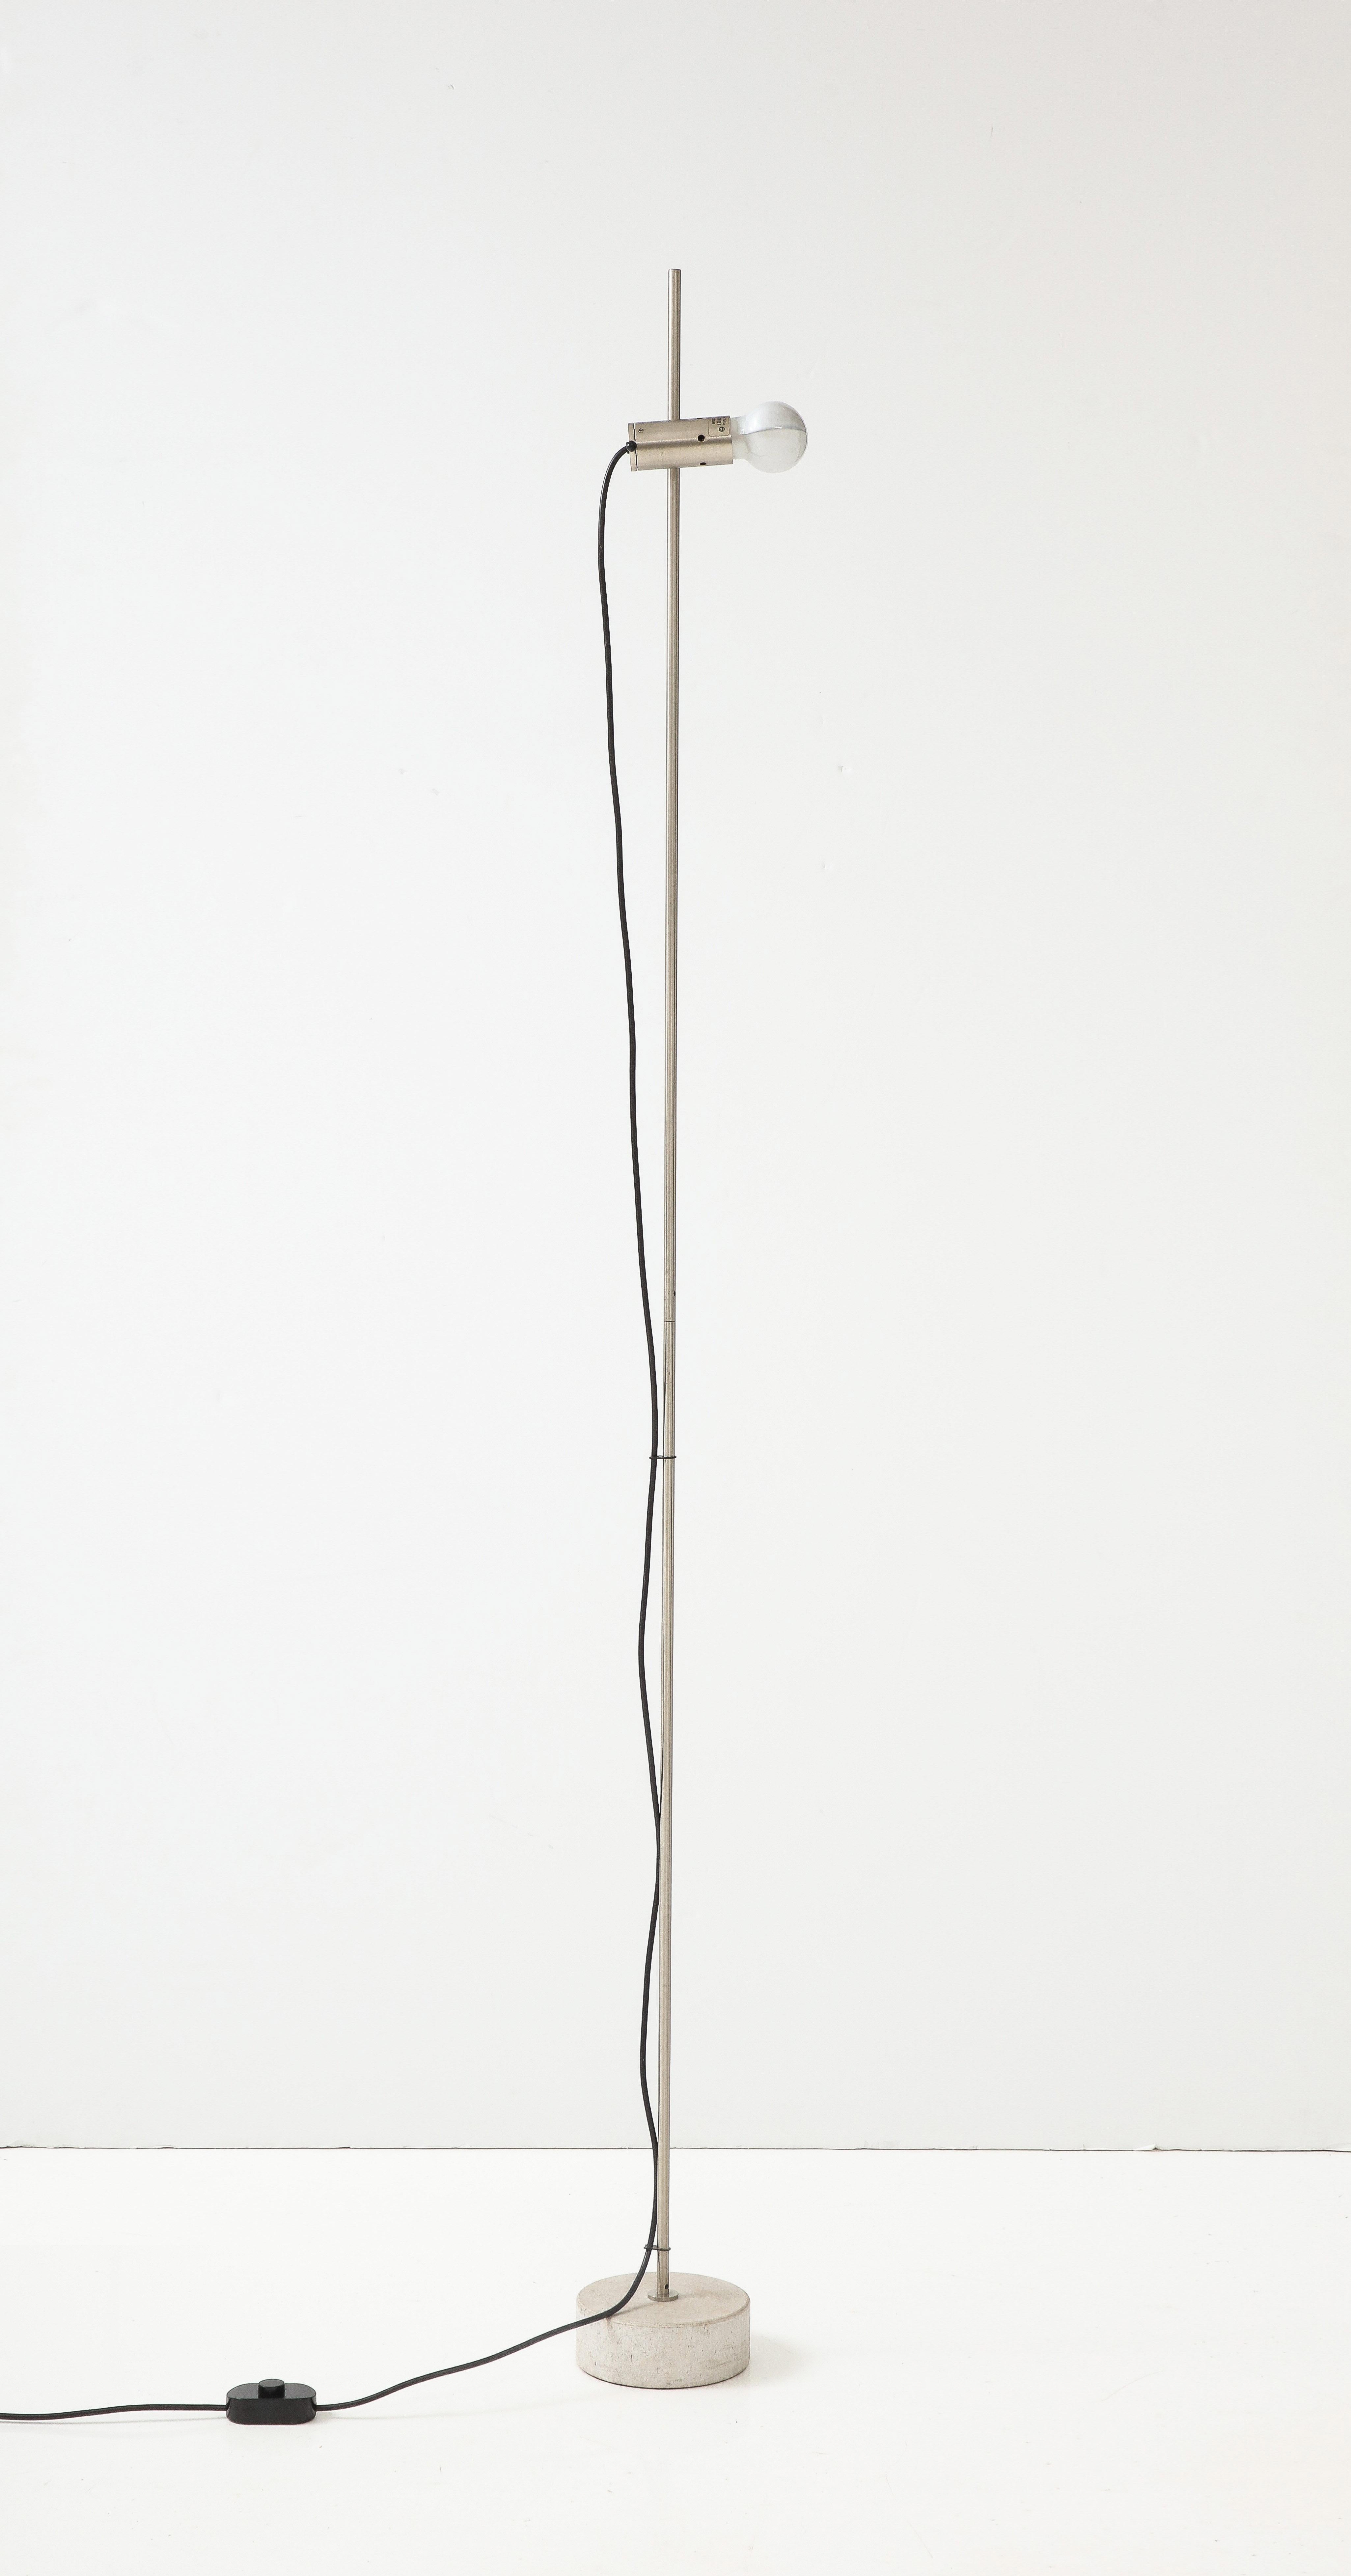 Icône du design italien des années 1960 : un lampadaire minimaliste de Tito Agnoli pour Oluce. Elle se compose d'une base en béton et d'un poteau en acier inoxydable sur lequel la prise peut être ajustée de manière multidimensionnelle. Le bloc de